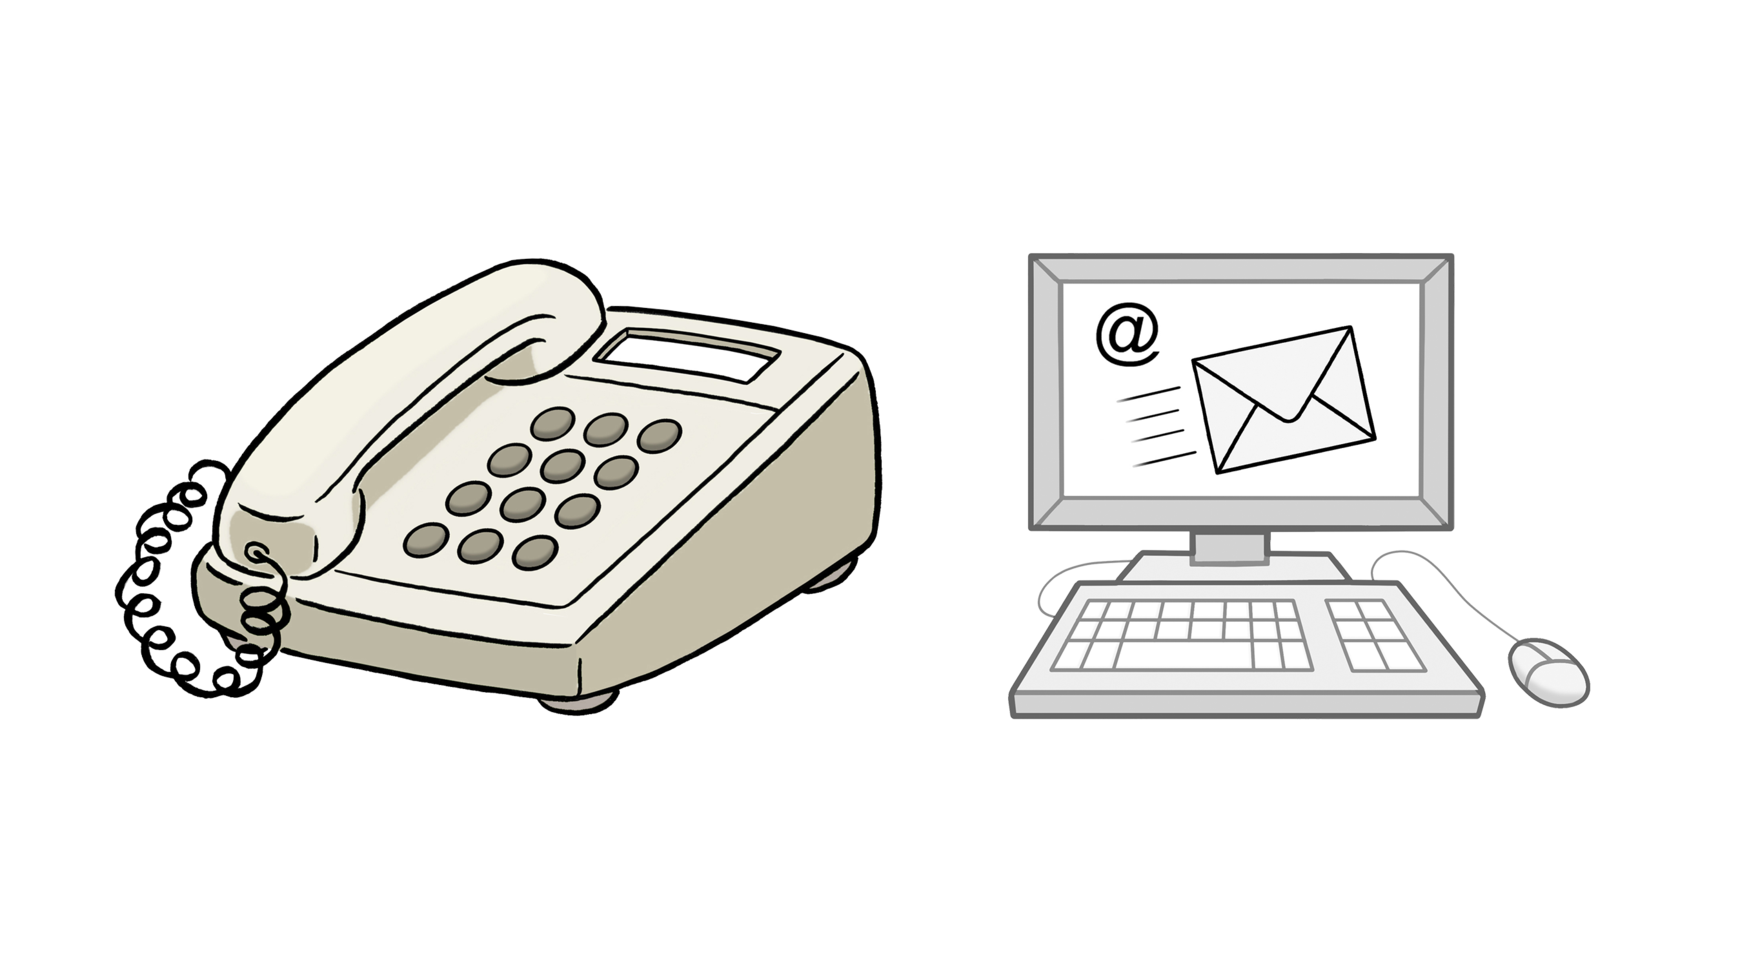 Grafik: Abbildung eines Telefons und daneben ein Computer. Auf dessen Bildschirm ist eine eingehende Email abgebildet.